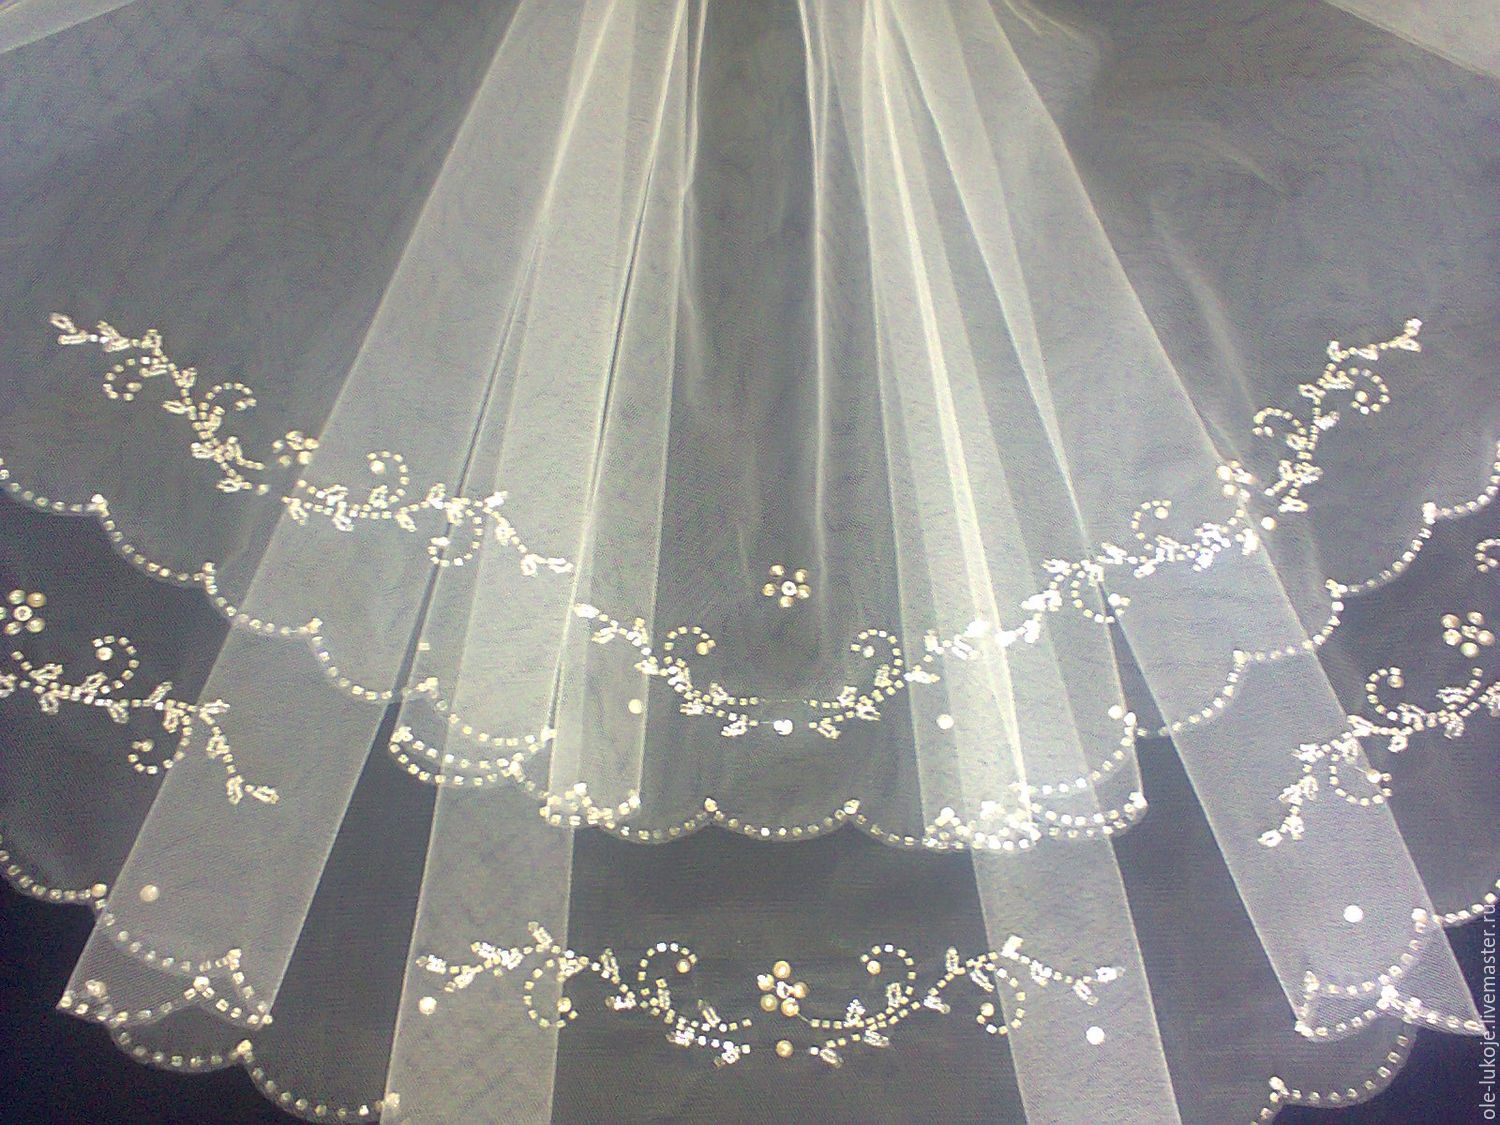 Свадебное платье со стеклярусом